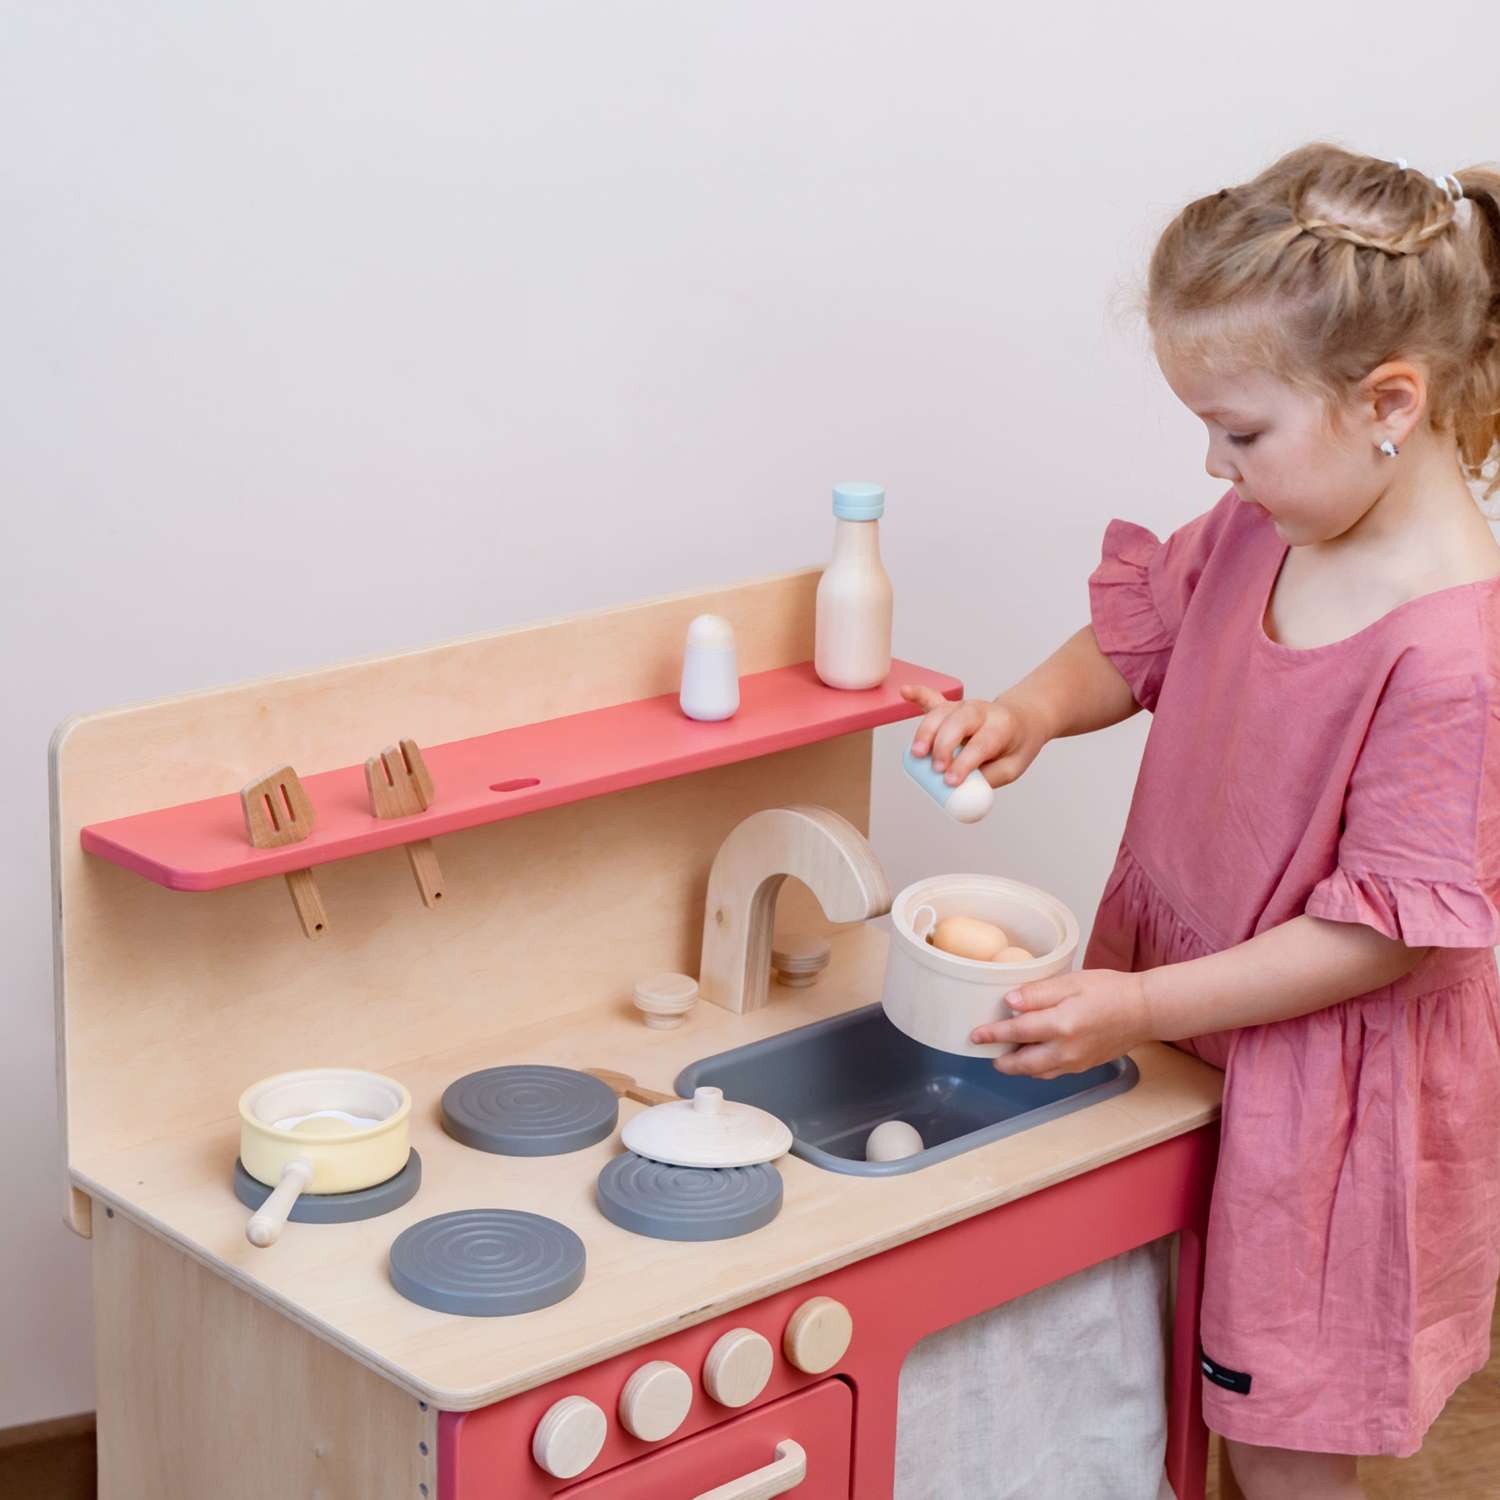 Кухня детская деревянная tioTeo детям Medium - фото 6